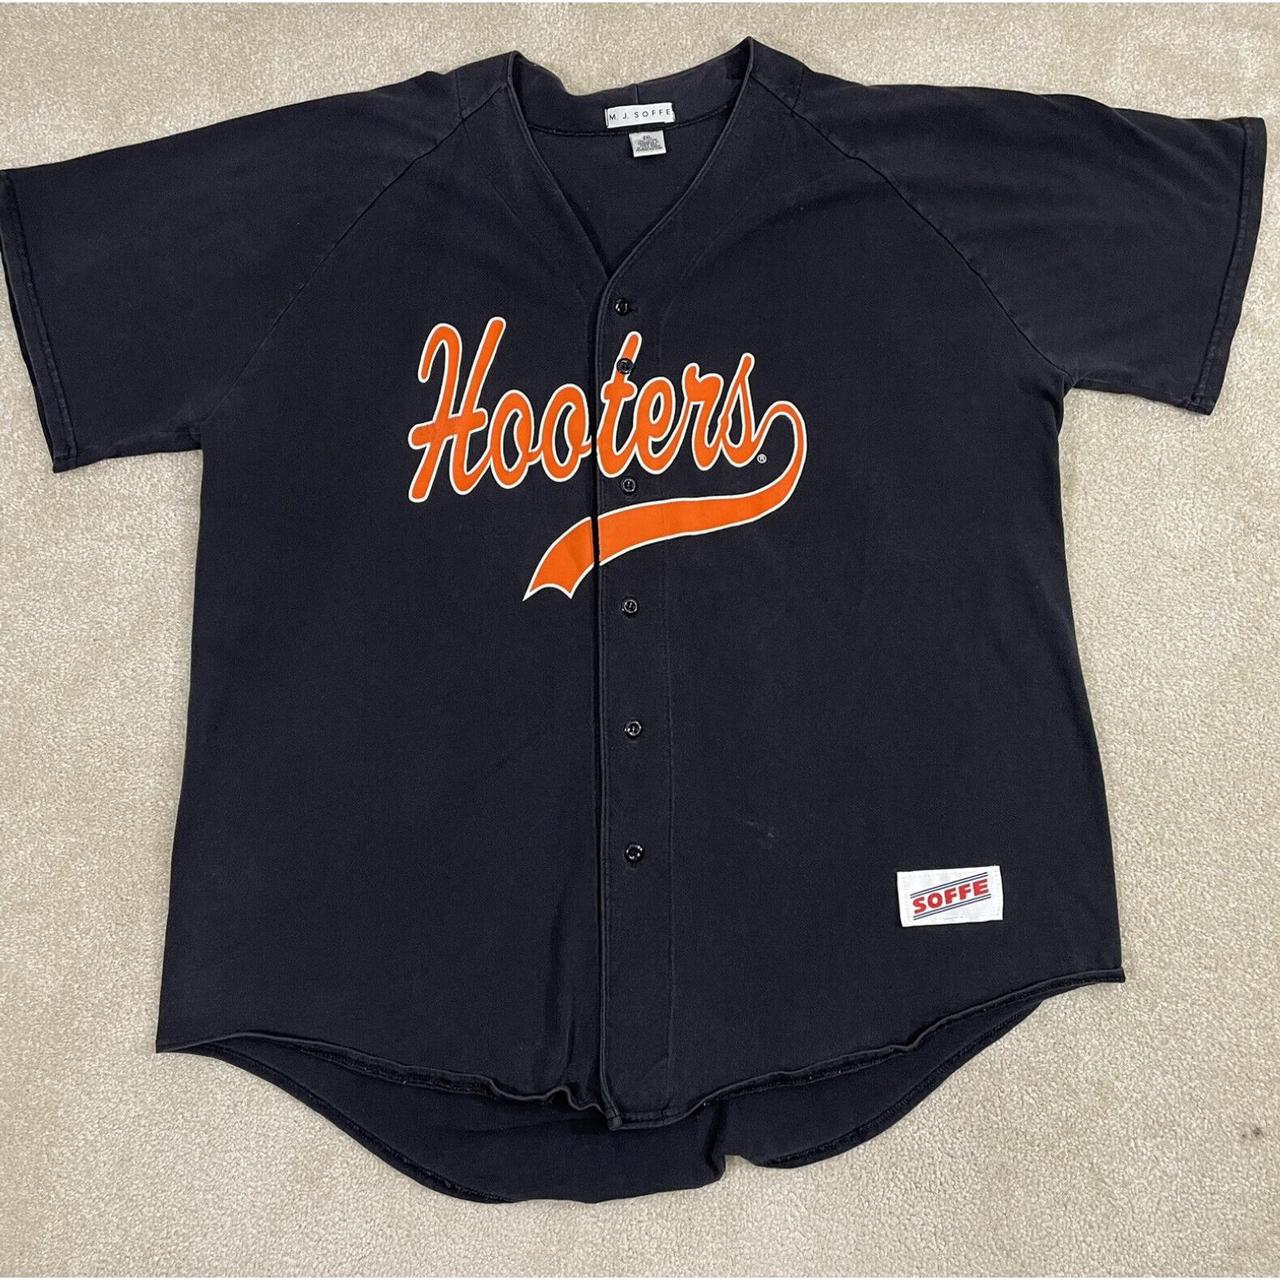 Vintage Baseball Jersey for sale